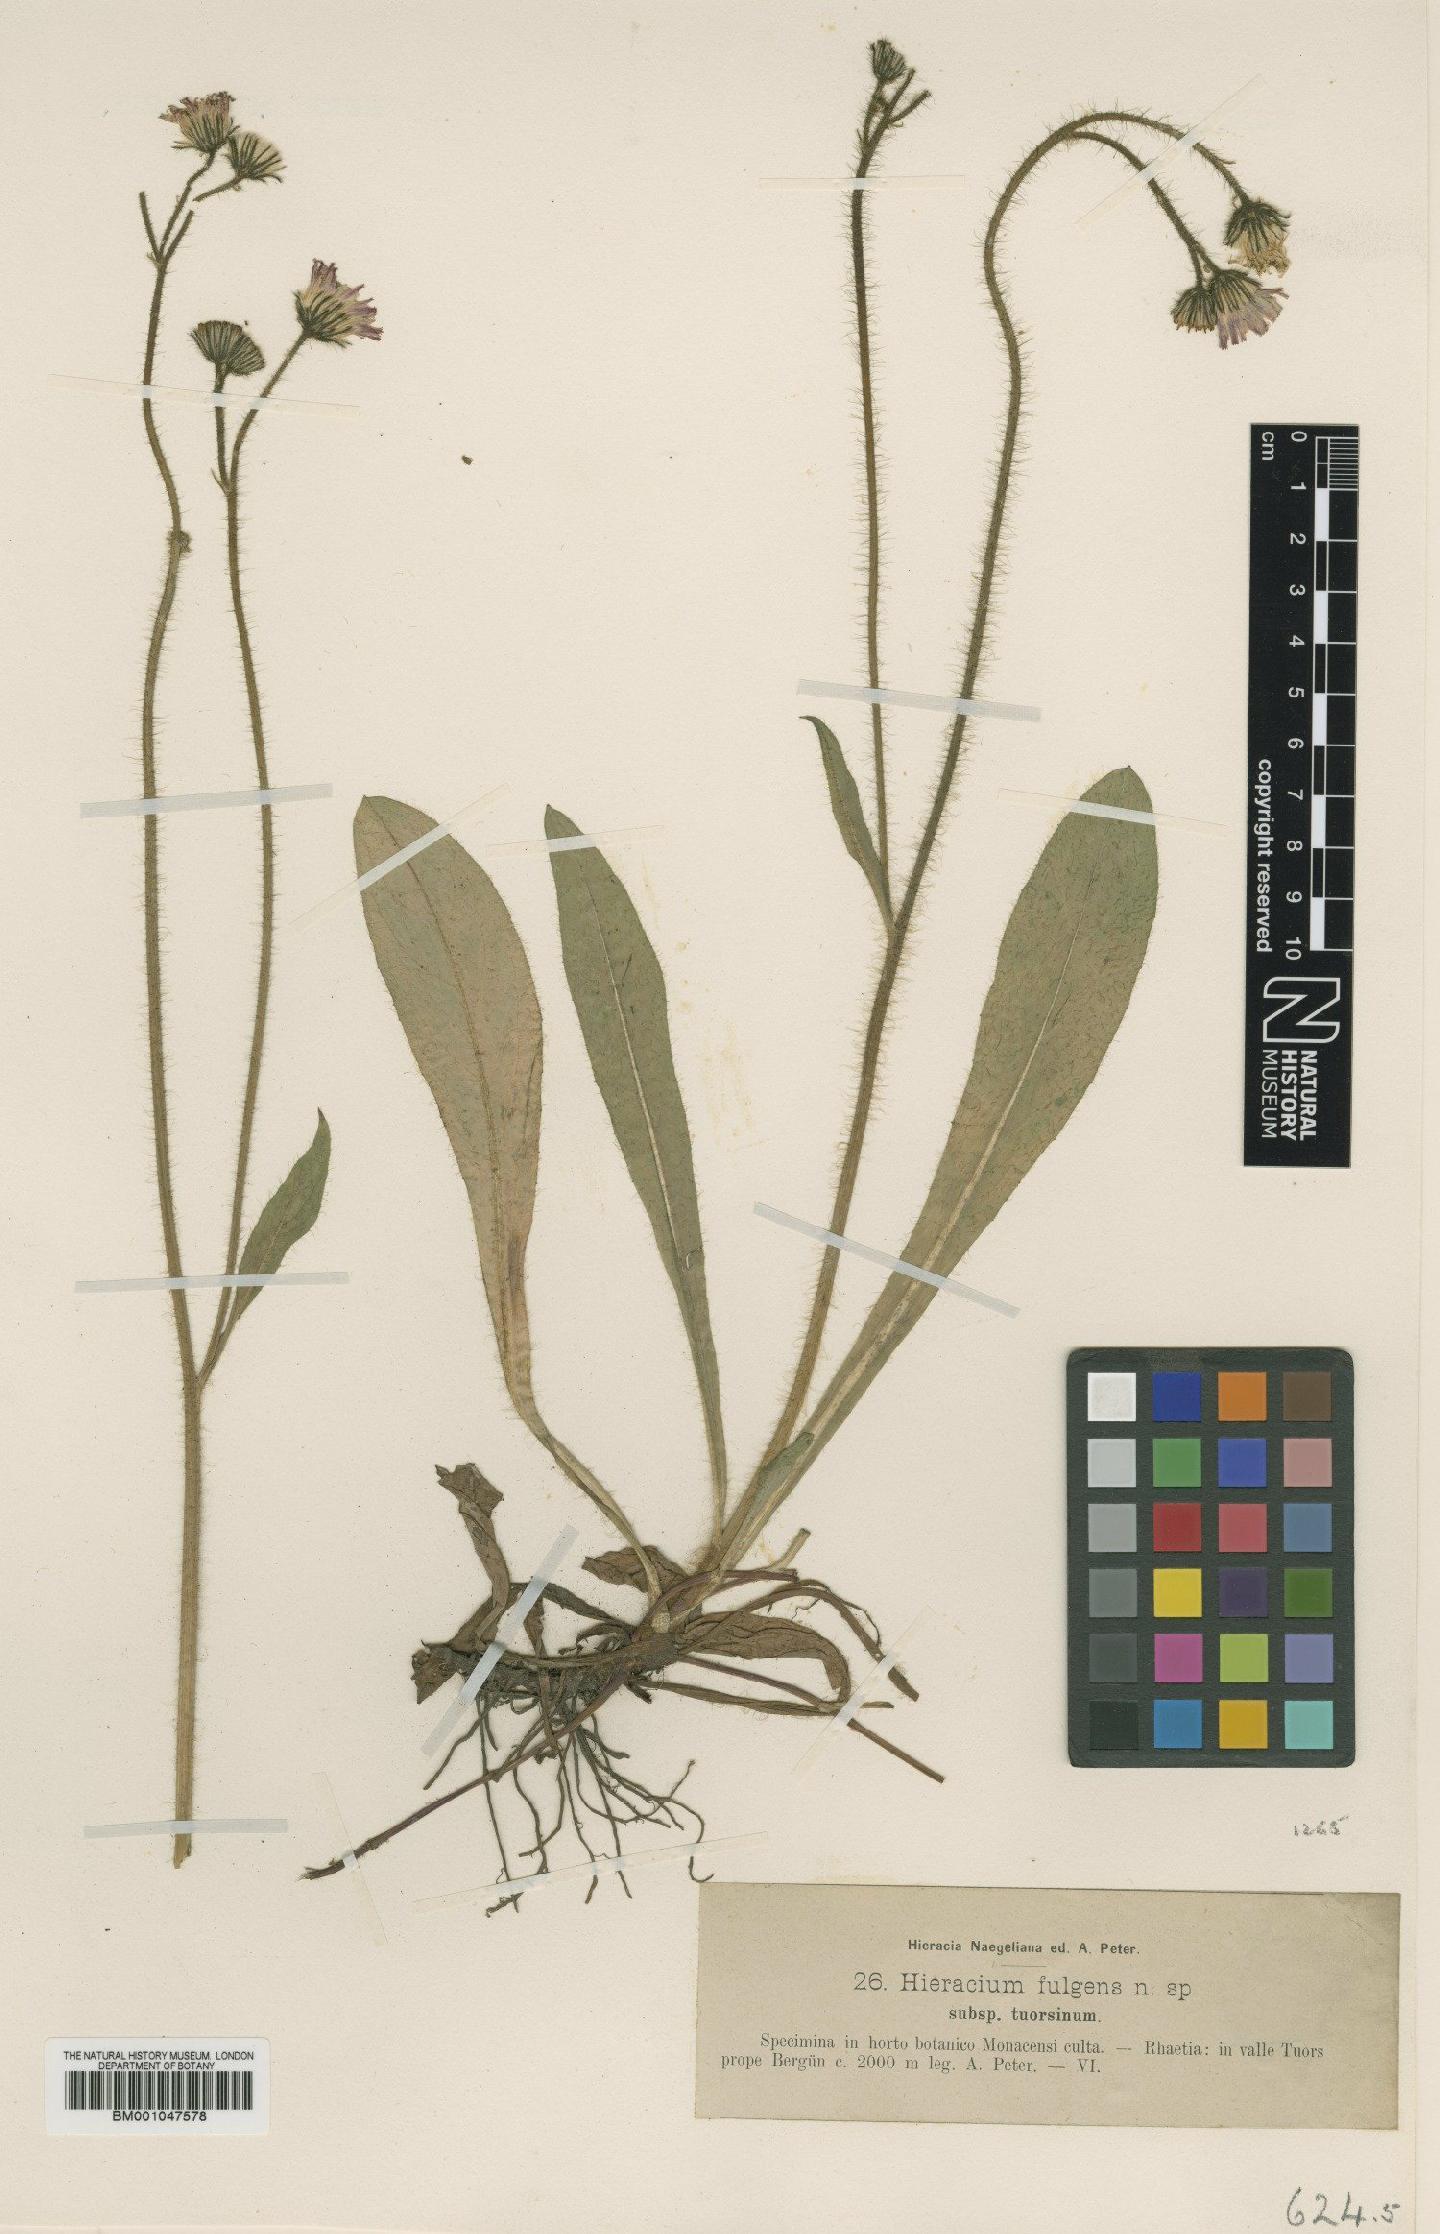 To NHMUK collection (Hieracium fulgens subsp. tuorsinum Nägeli & Peter; Type; NHMUK:ecatalogue:2777213)